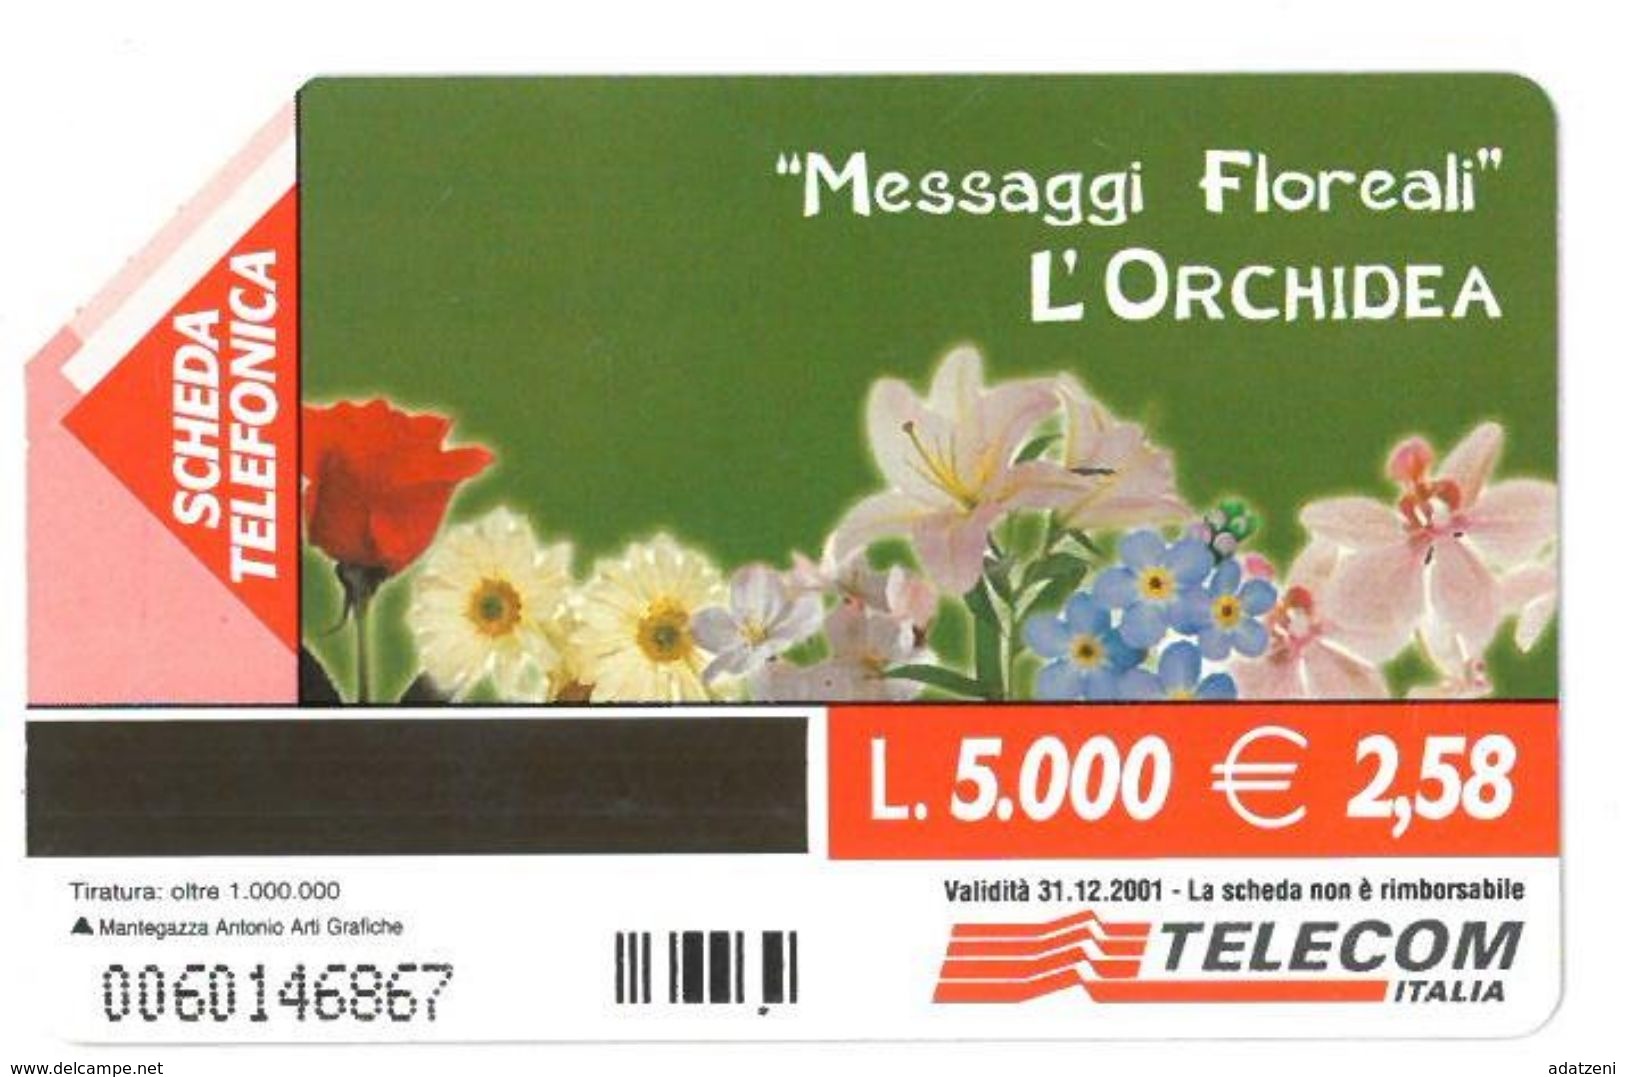 ITALIA SCHEDA TELEFONICA TELECOM SERIE MESSAGGI FLOREALI L’ORCHIDEA OFFRE UN OMAGGIO ALLA BELLEZZA RAFFINATA 0060146867 - Fleurs